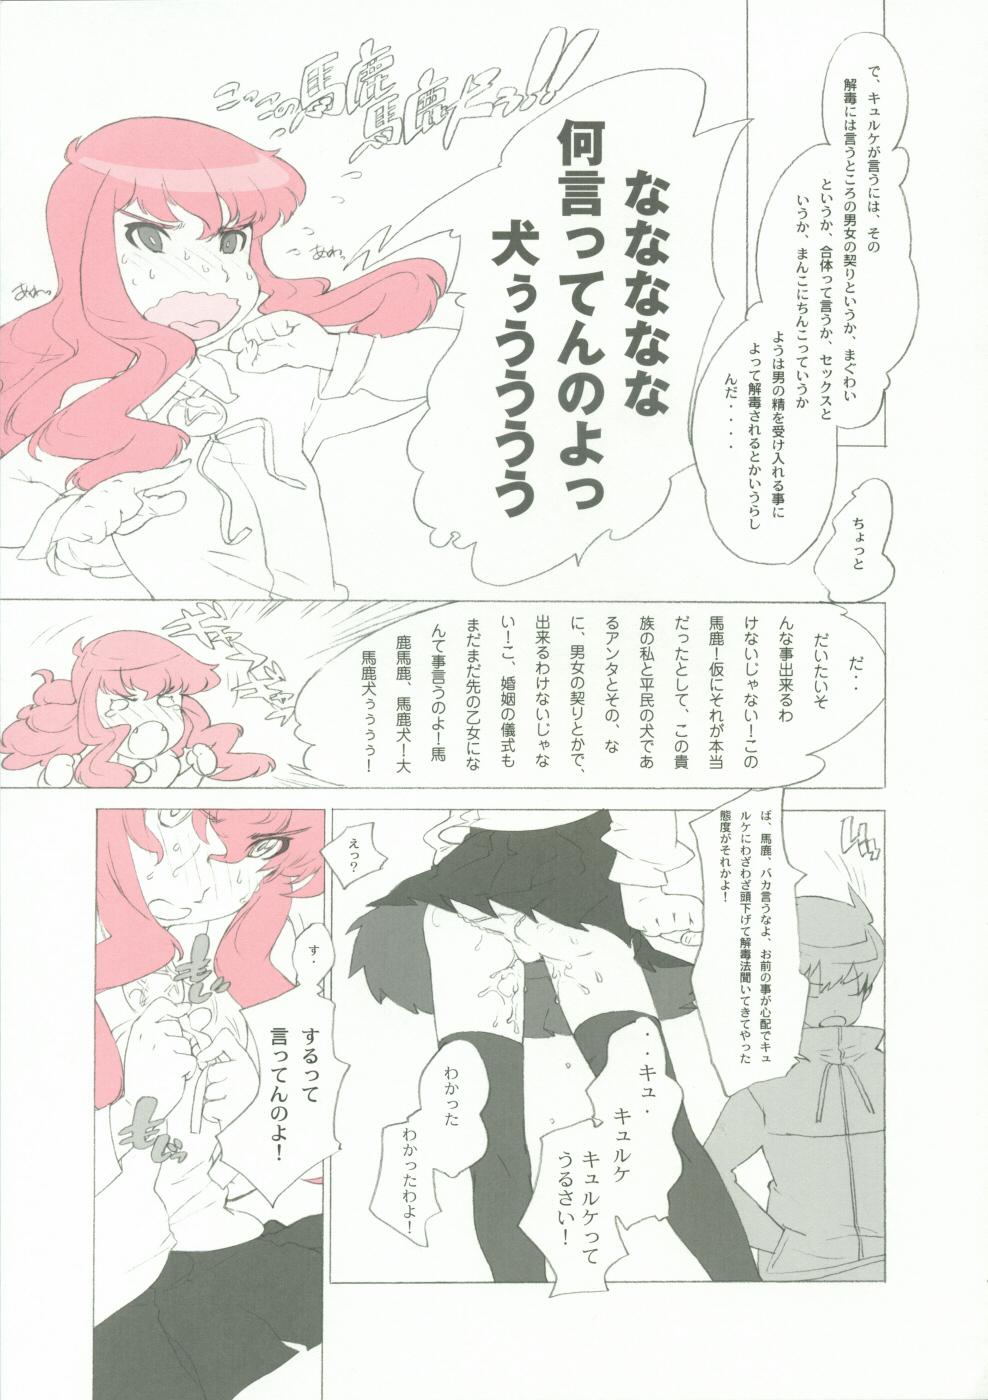 Old Momo Kami Shikiso - Zero no tsukaima Rope - Page 8